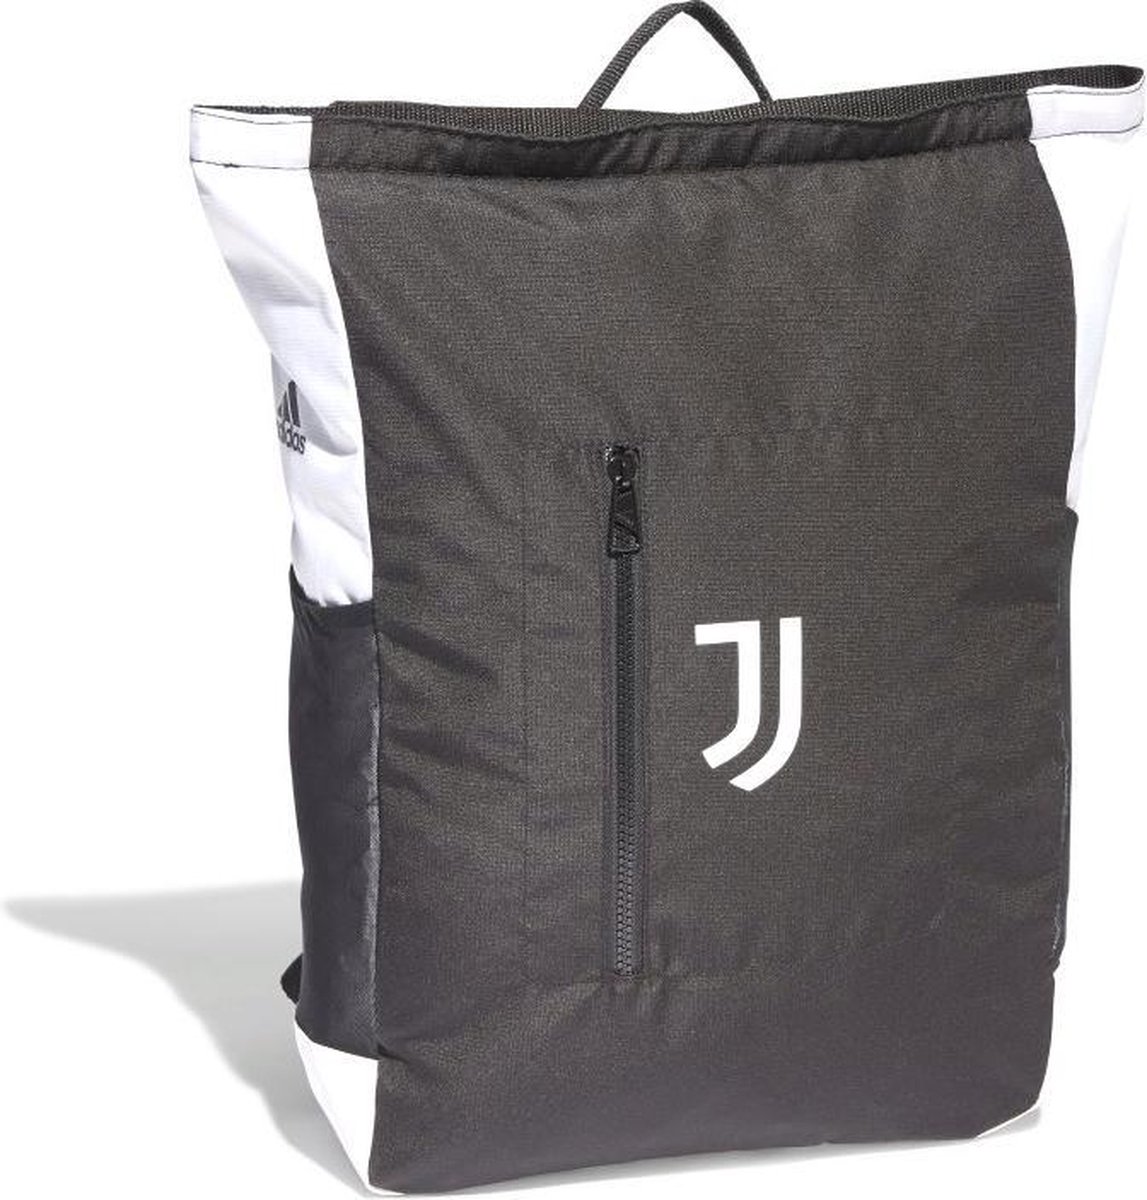 Juventus rugzak Adidas 48 cm zwart